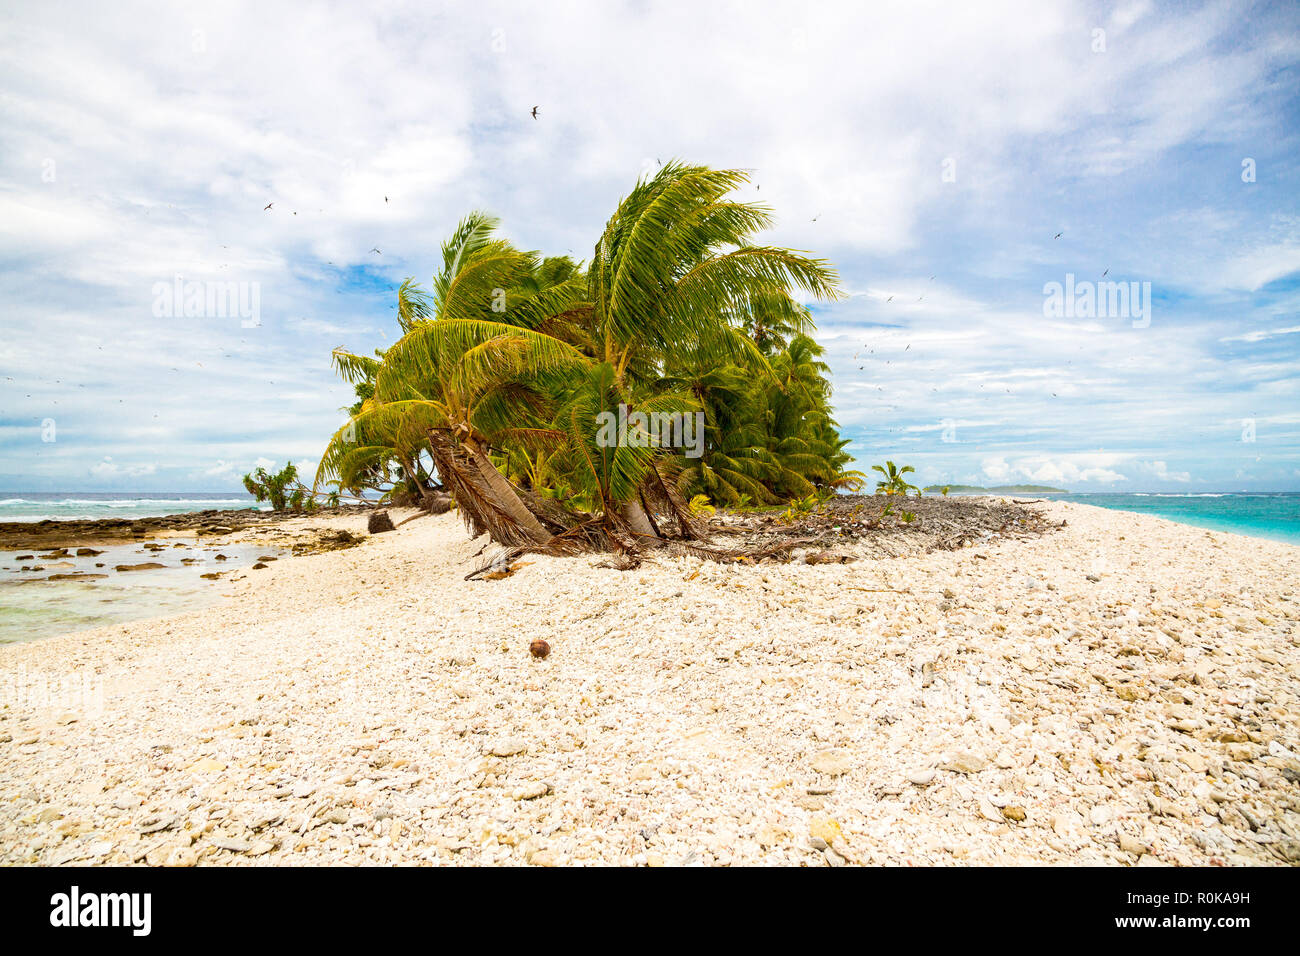 Piccola remota isola tropicale (motu) ricoperta con le palme in azzurro turchese laguna blu. Giallo la spiaggia di roccia, grande stormo di uccelli che volano sopra. Tuvalu. Foto Stock